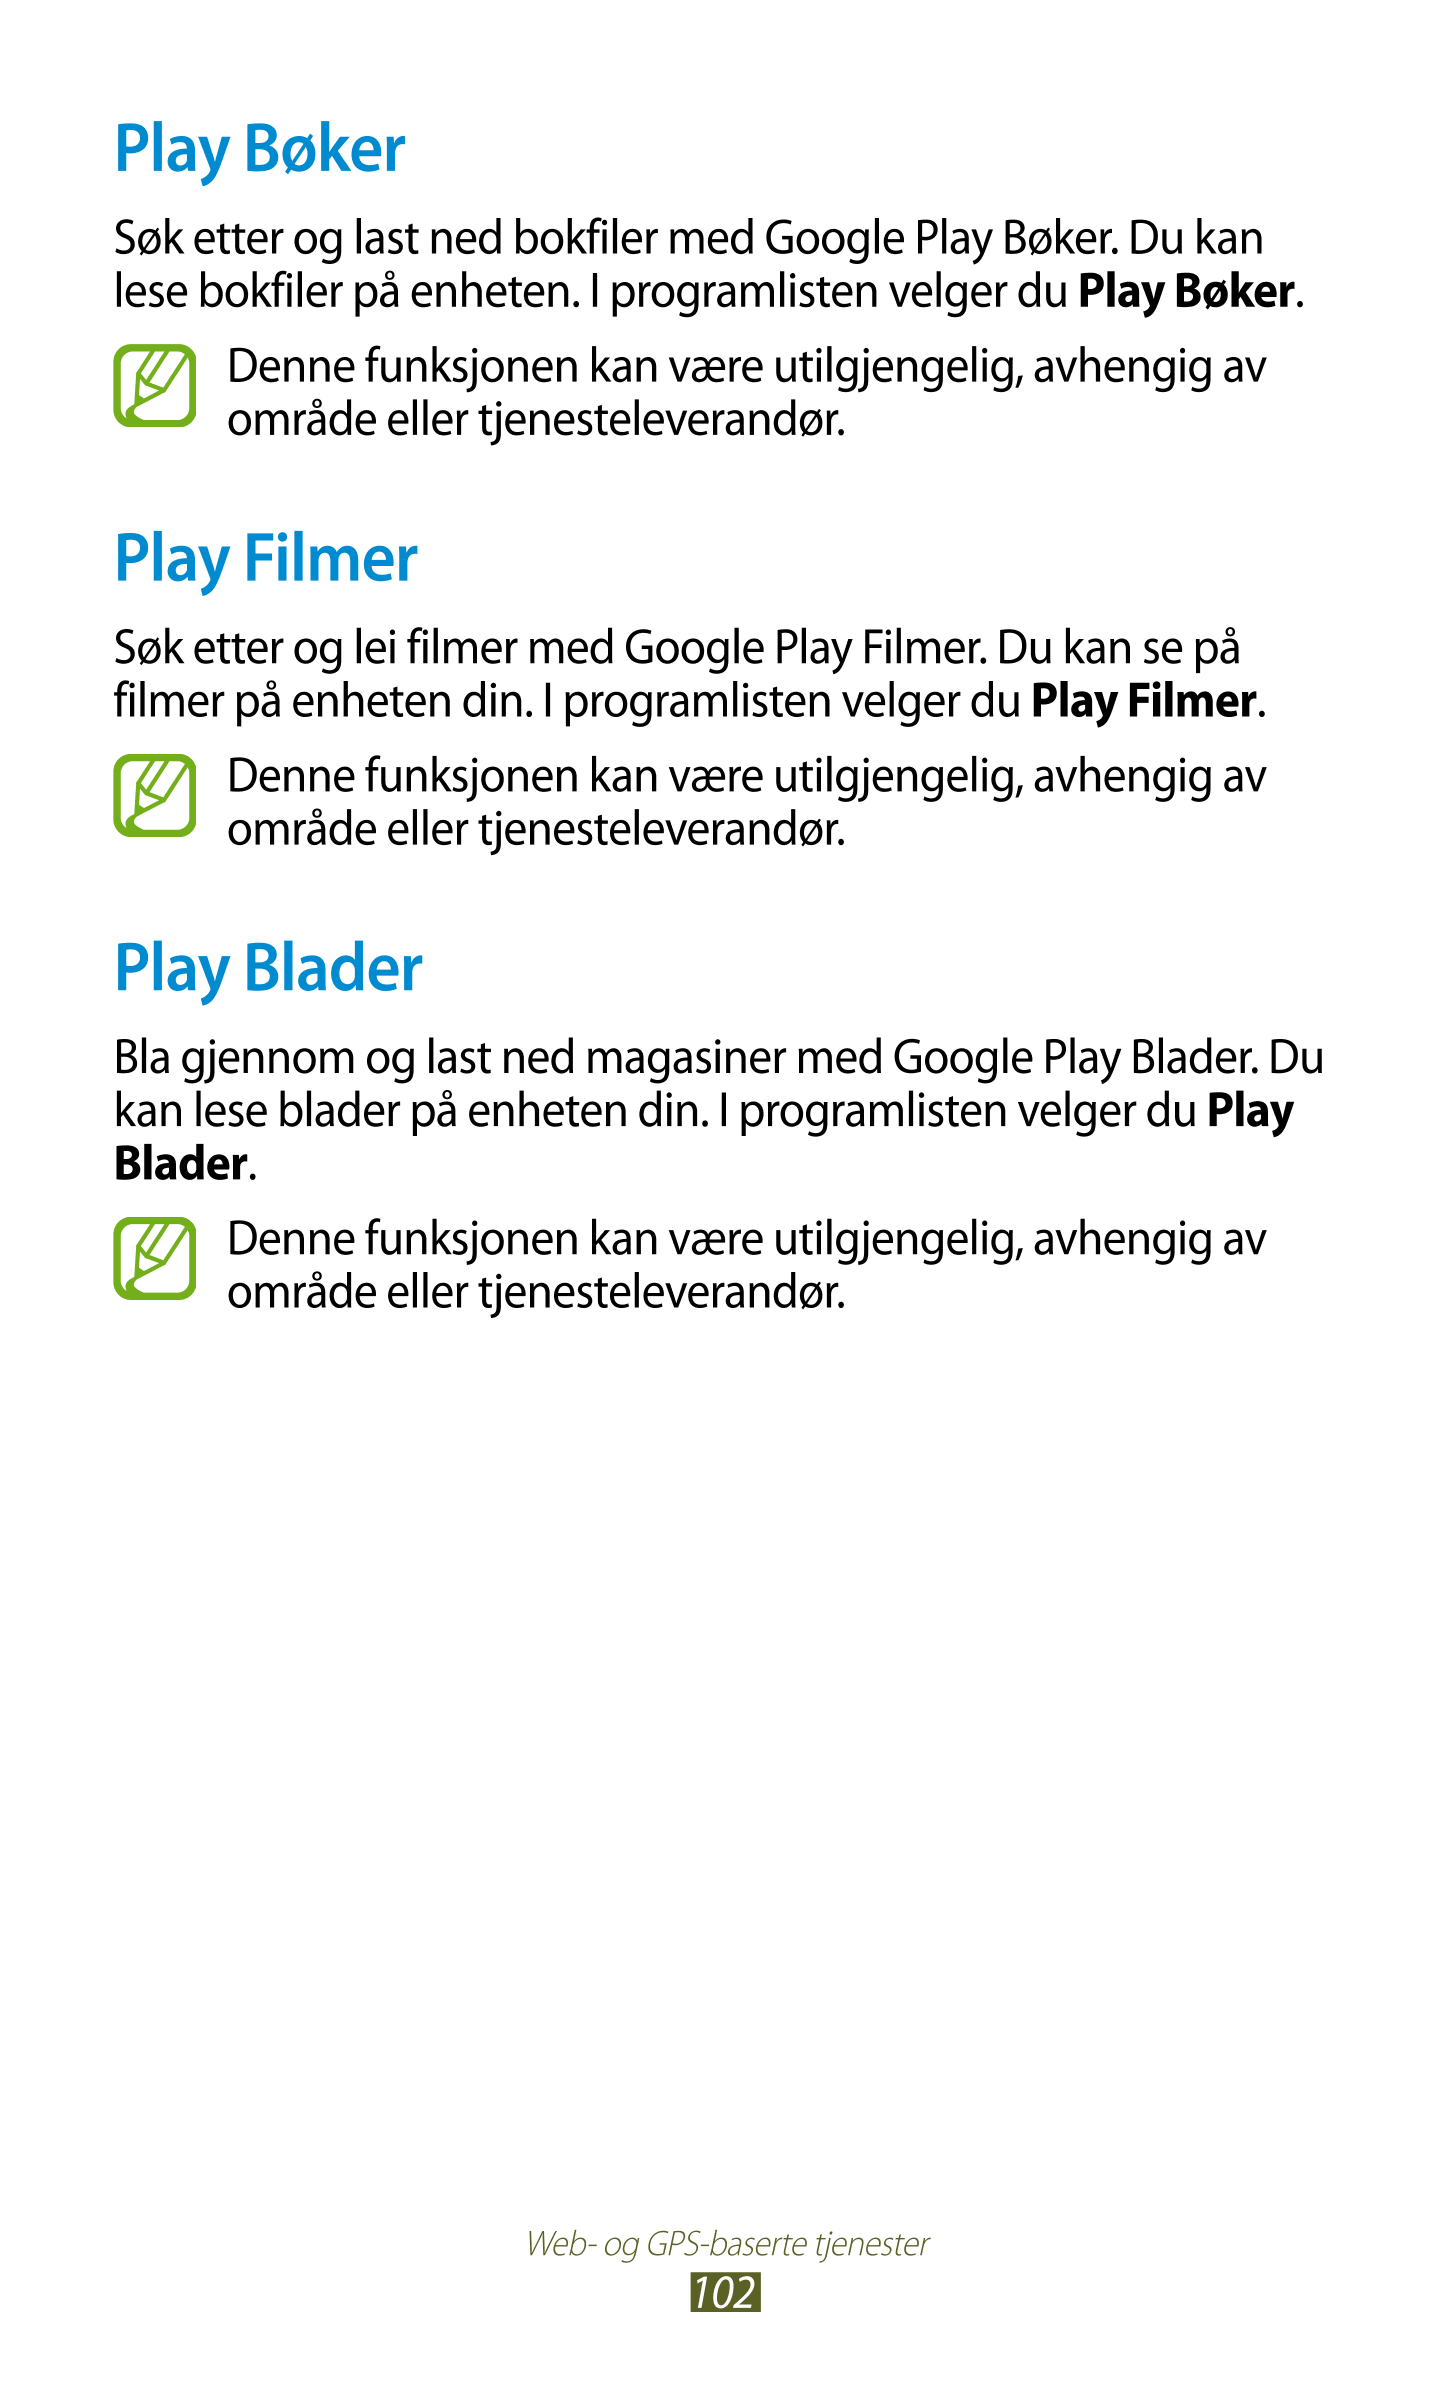 Play Bøker
Søk etter og last ned bokfiler med Google Play Bøker. Du kan 
lese bokfiler på enheten. I programlisten velger du  Pl